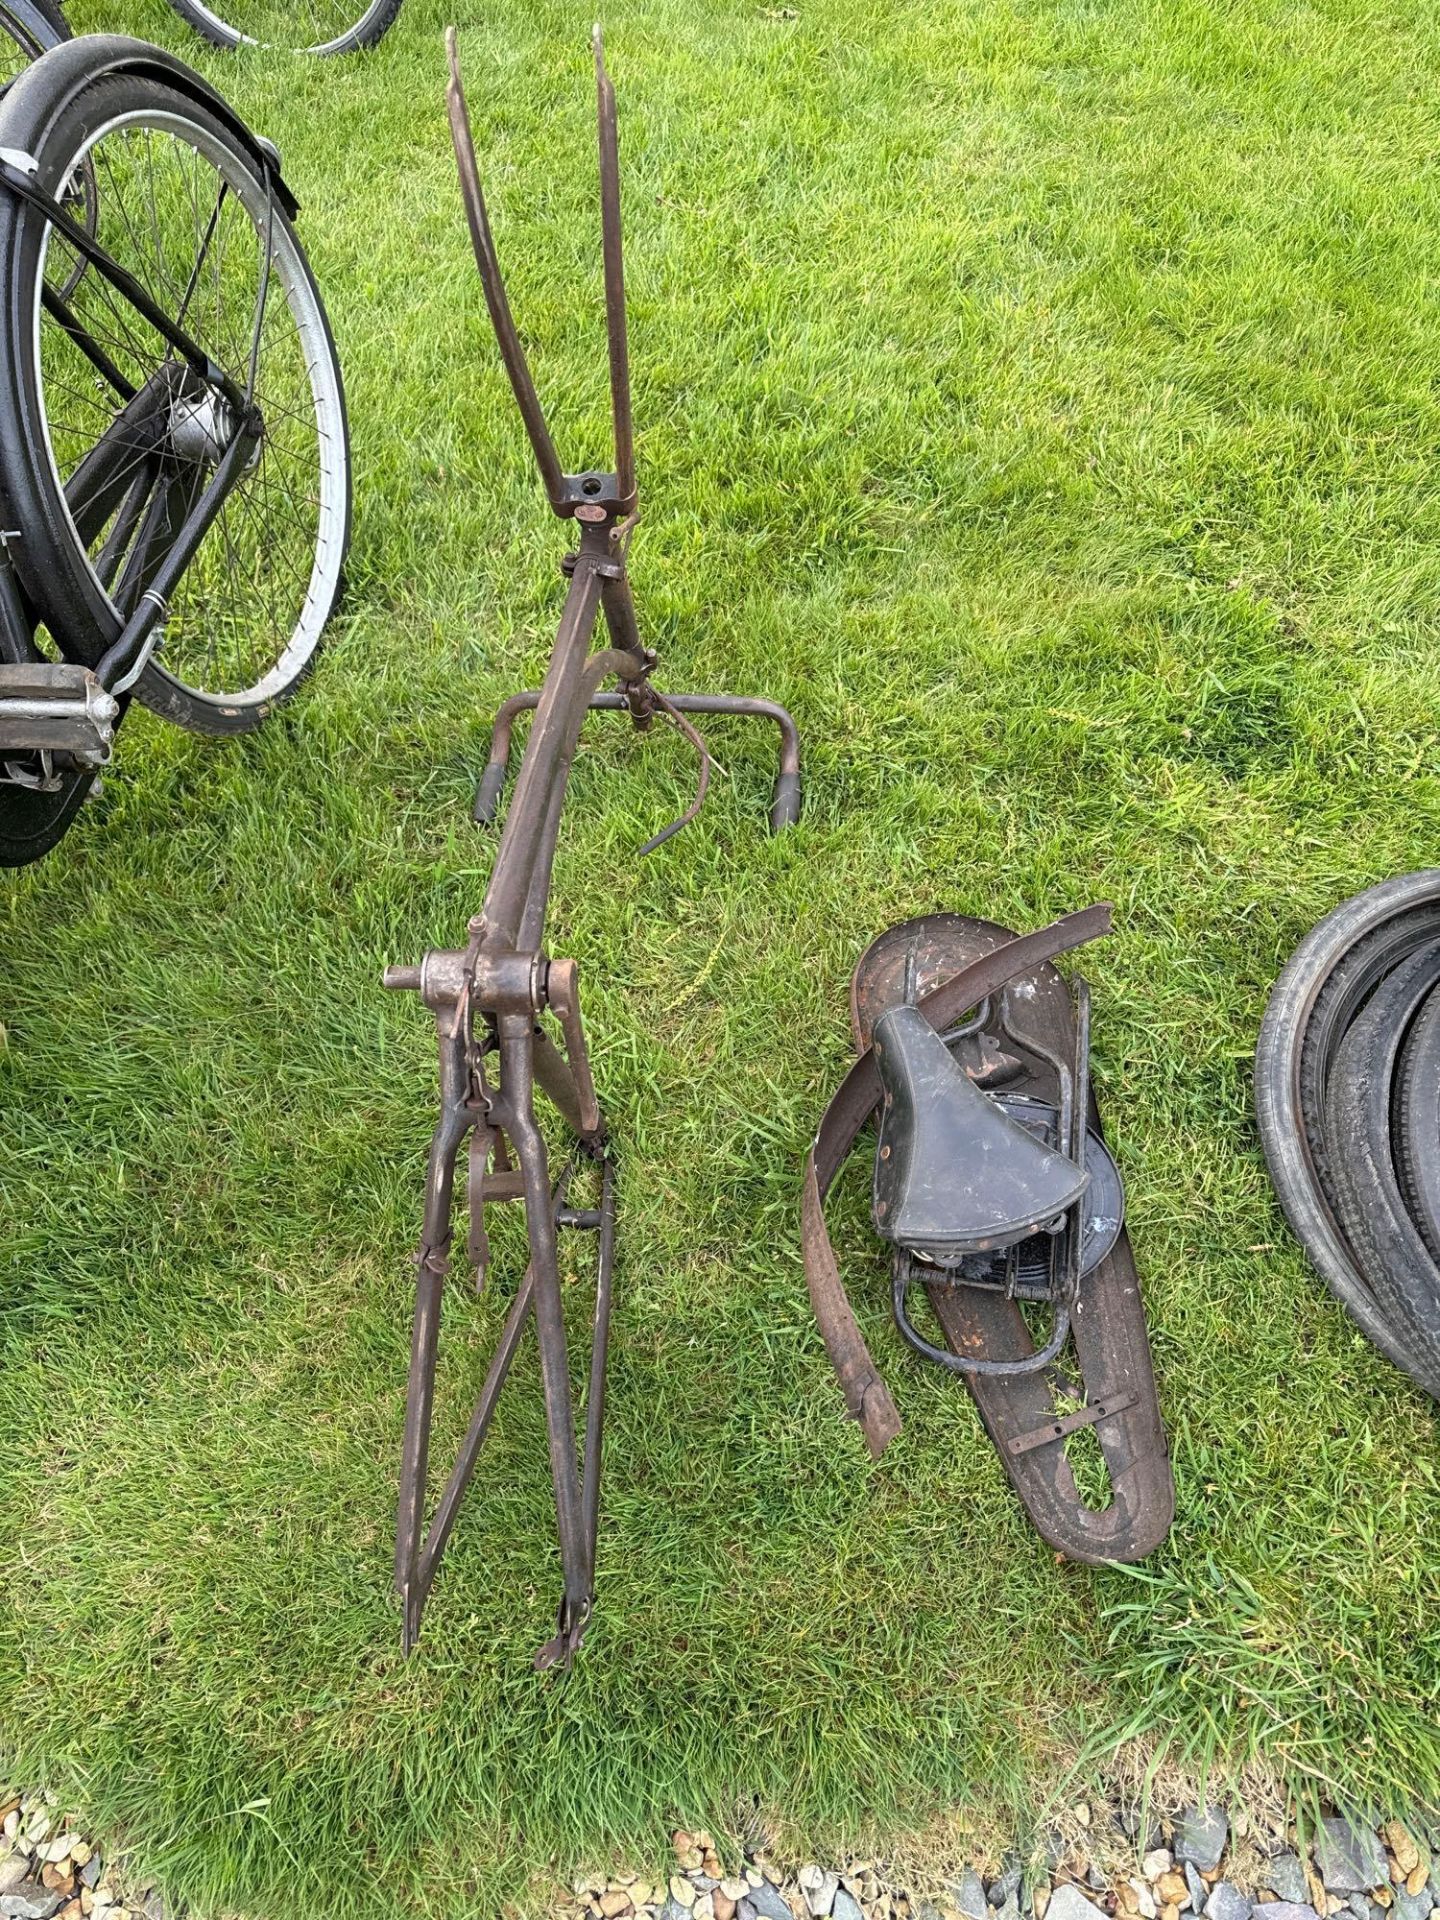 Vintage bike frame and spares